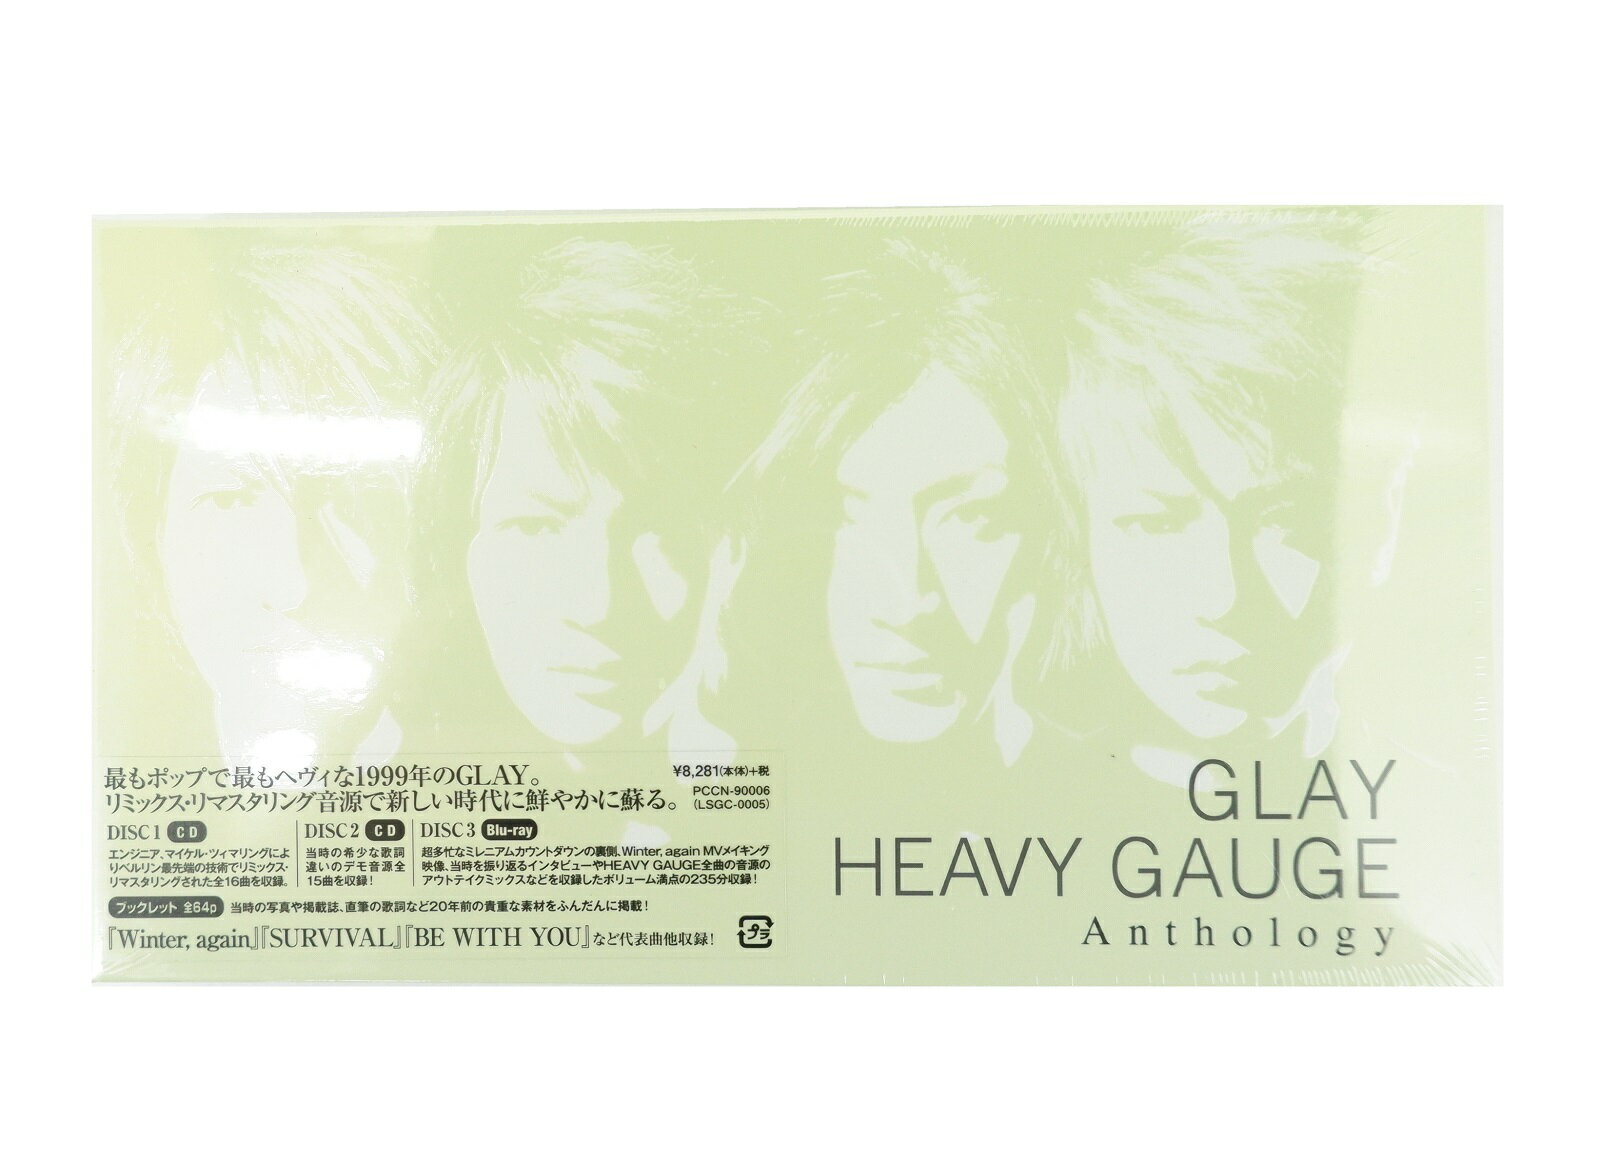 GLAY HEAVY GAUGE Anthology 【CD+Blu-ray】 【未開封】